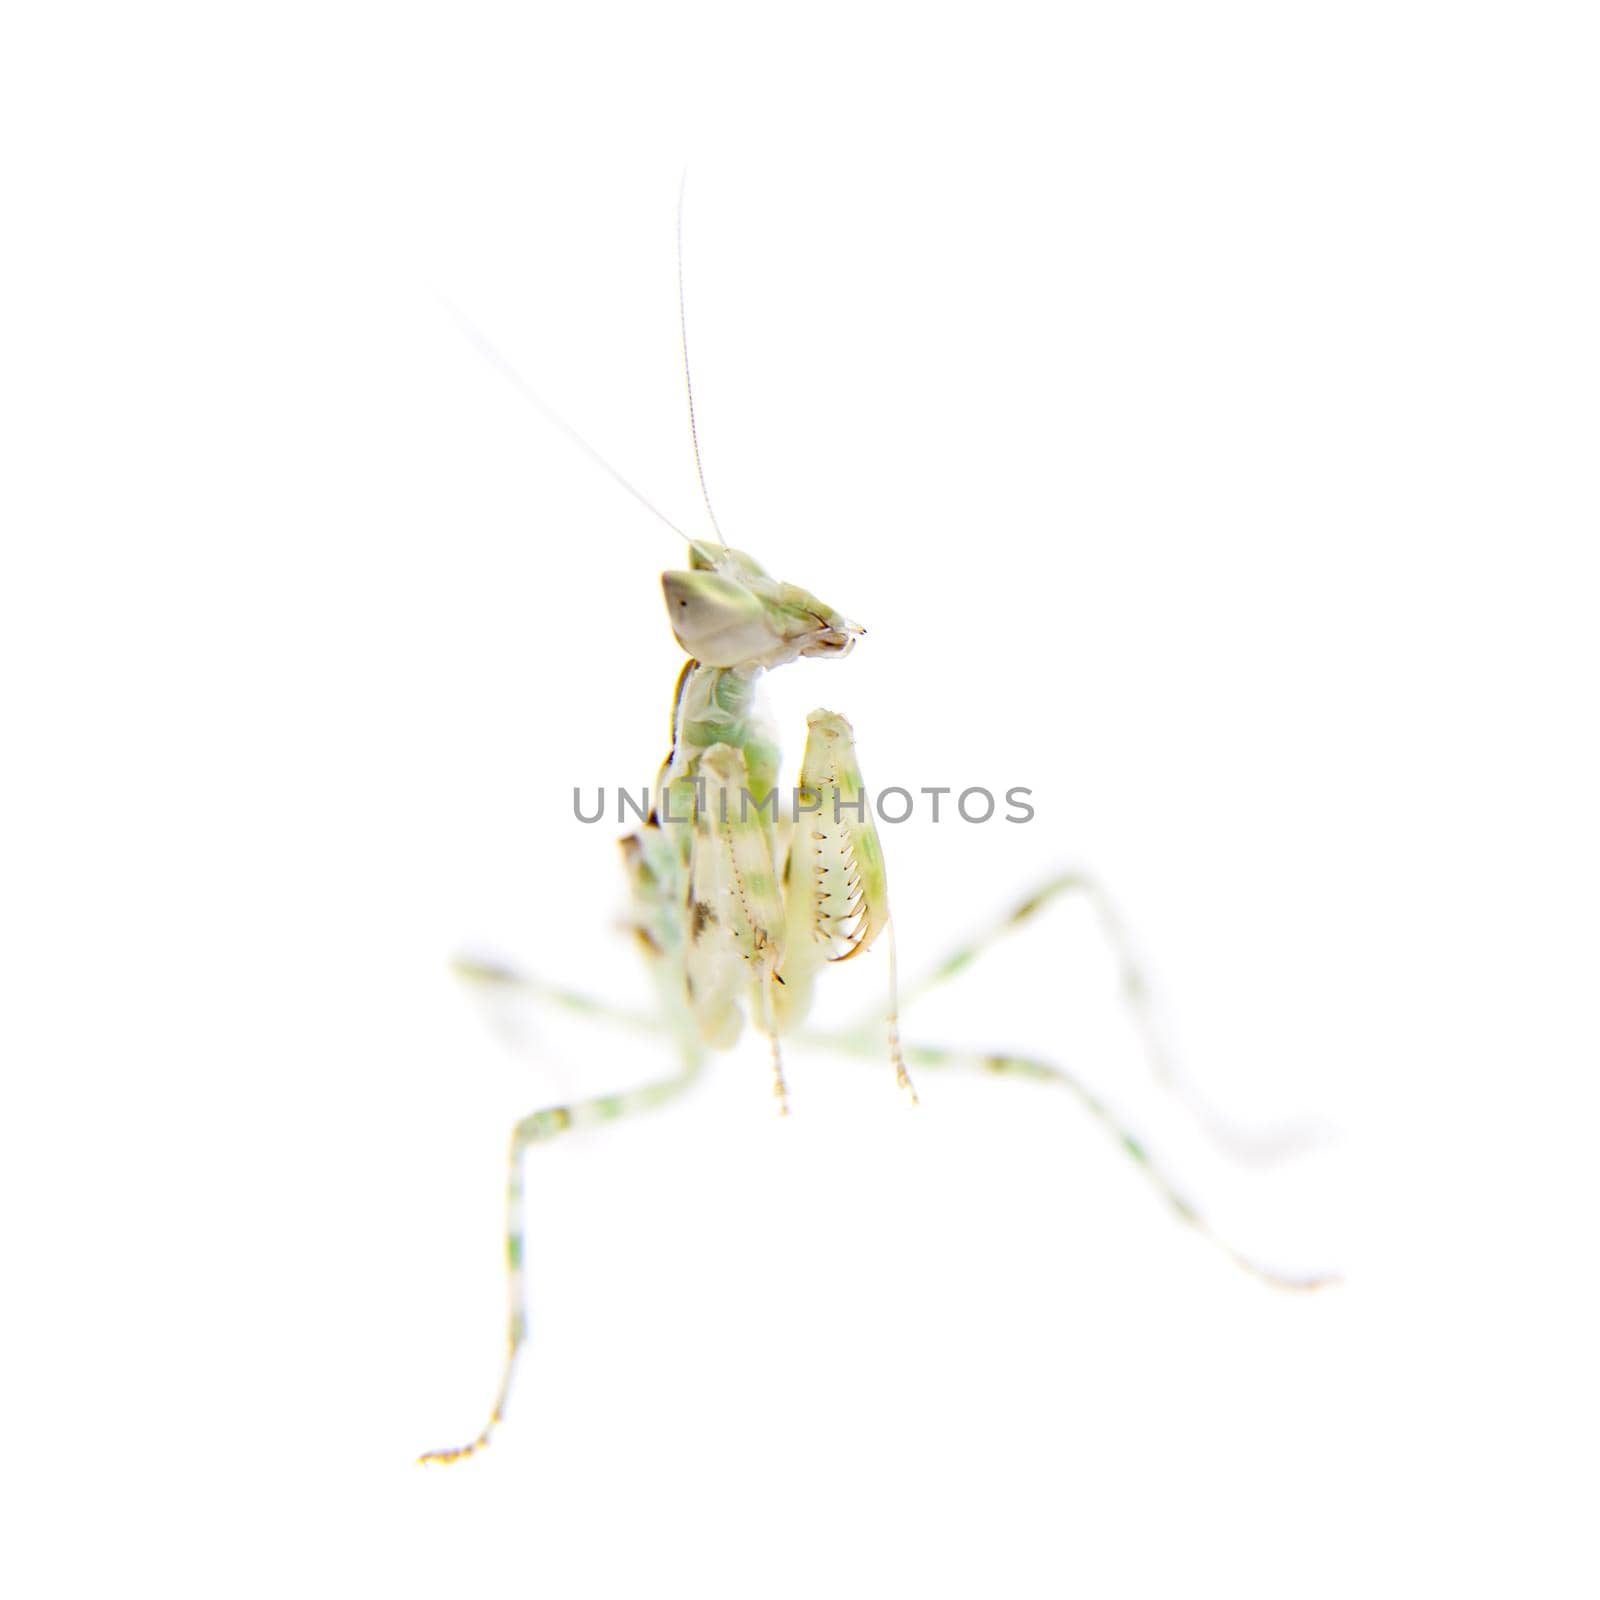 Indian flower praying mantis, Creobroter gemmatus, on white by RosaJay